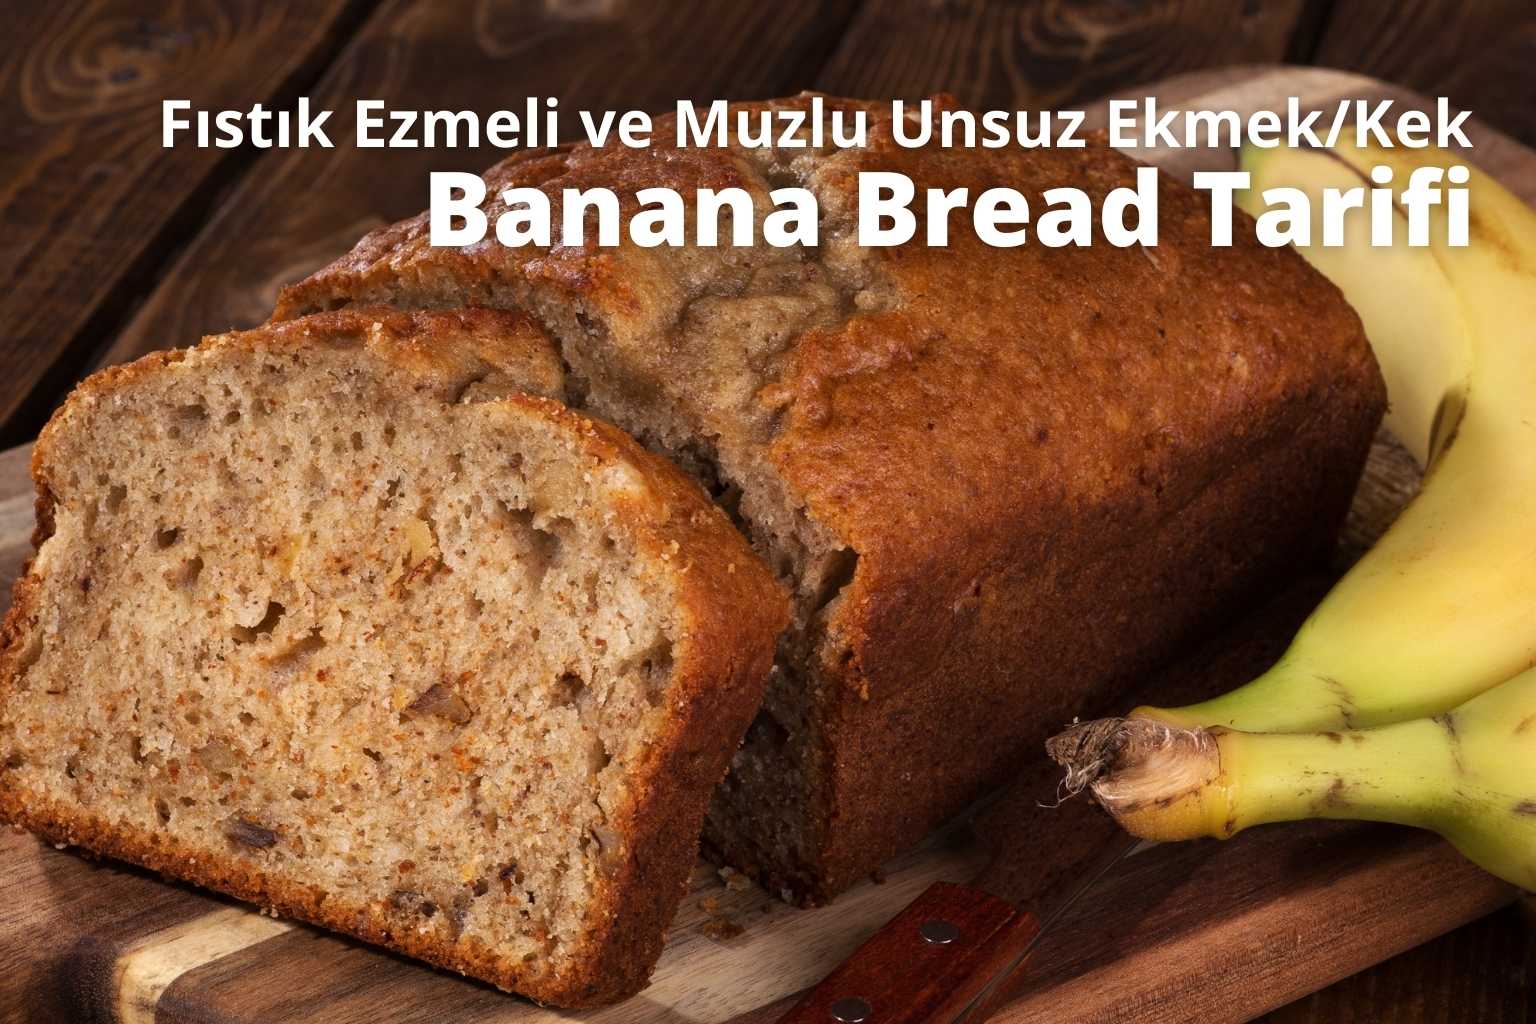 Fıstık Ezmeli ve Muzlu Unsuz Ekmek/Kek (Banana Bread) Tarifi | Gurmenin  Tarifler | Organik & Vegan